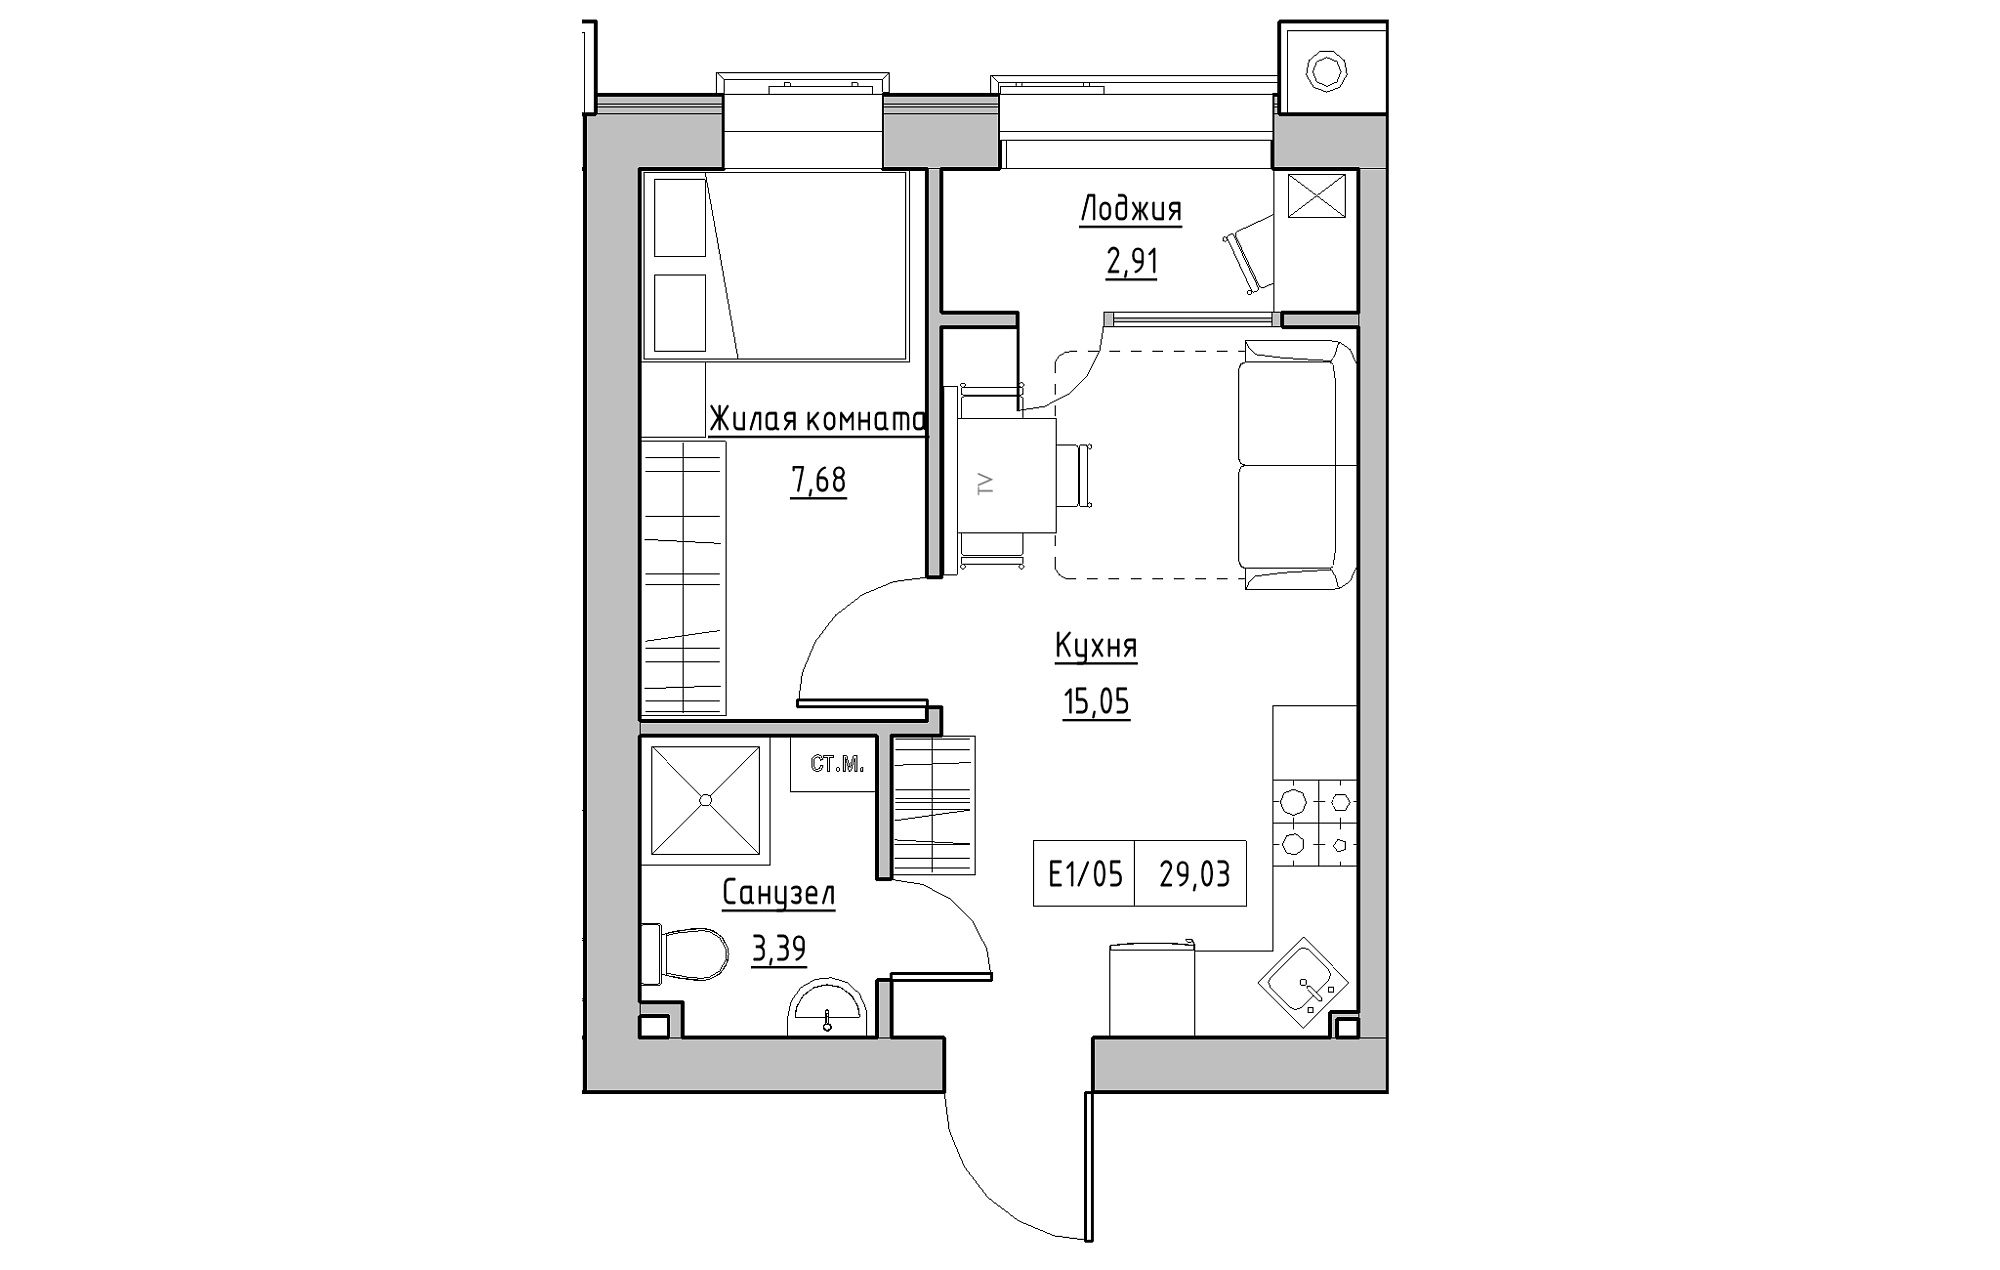 Планировка 1-к квартира площей 29.03м2, KS-013-04/0007.